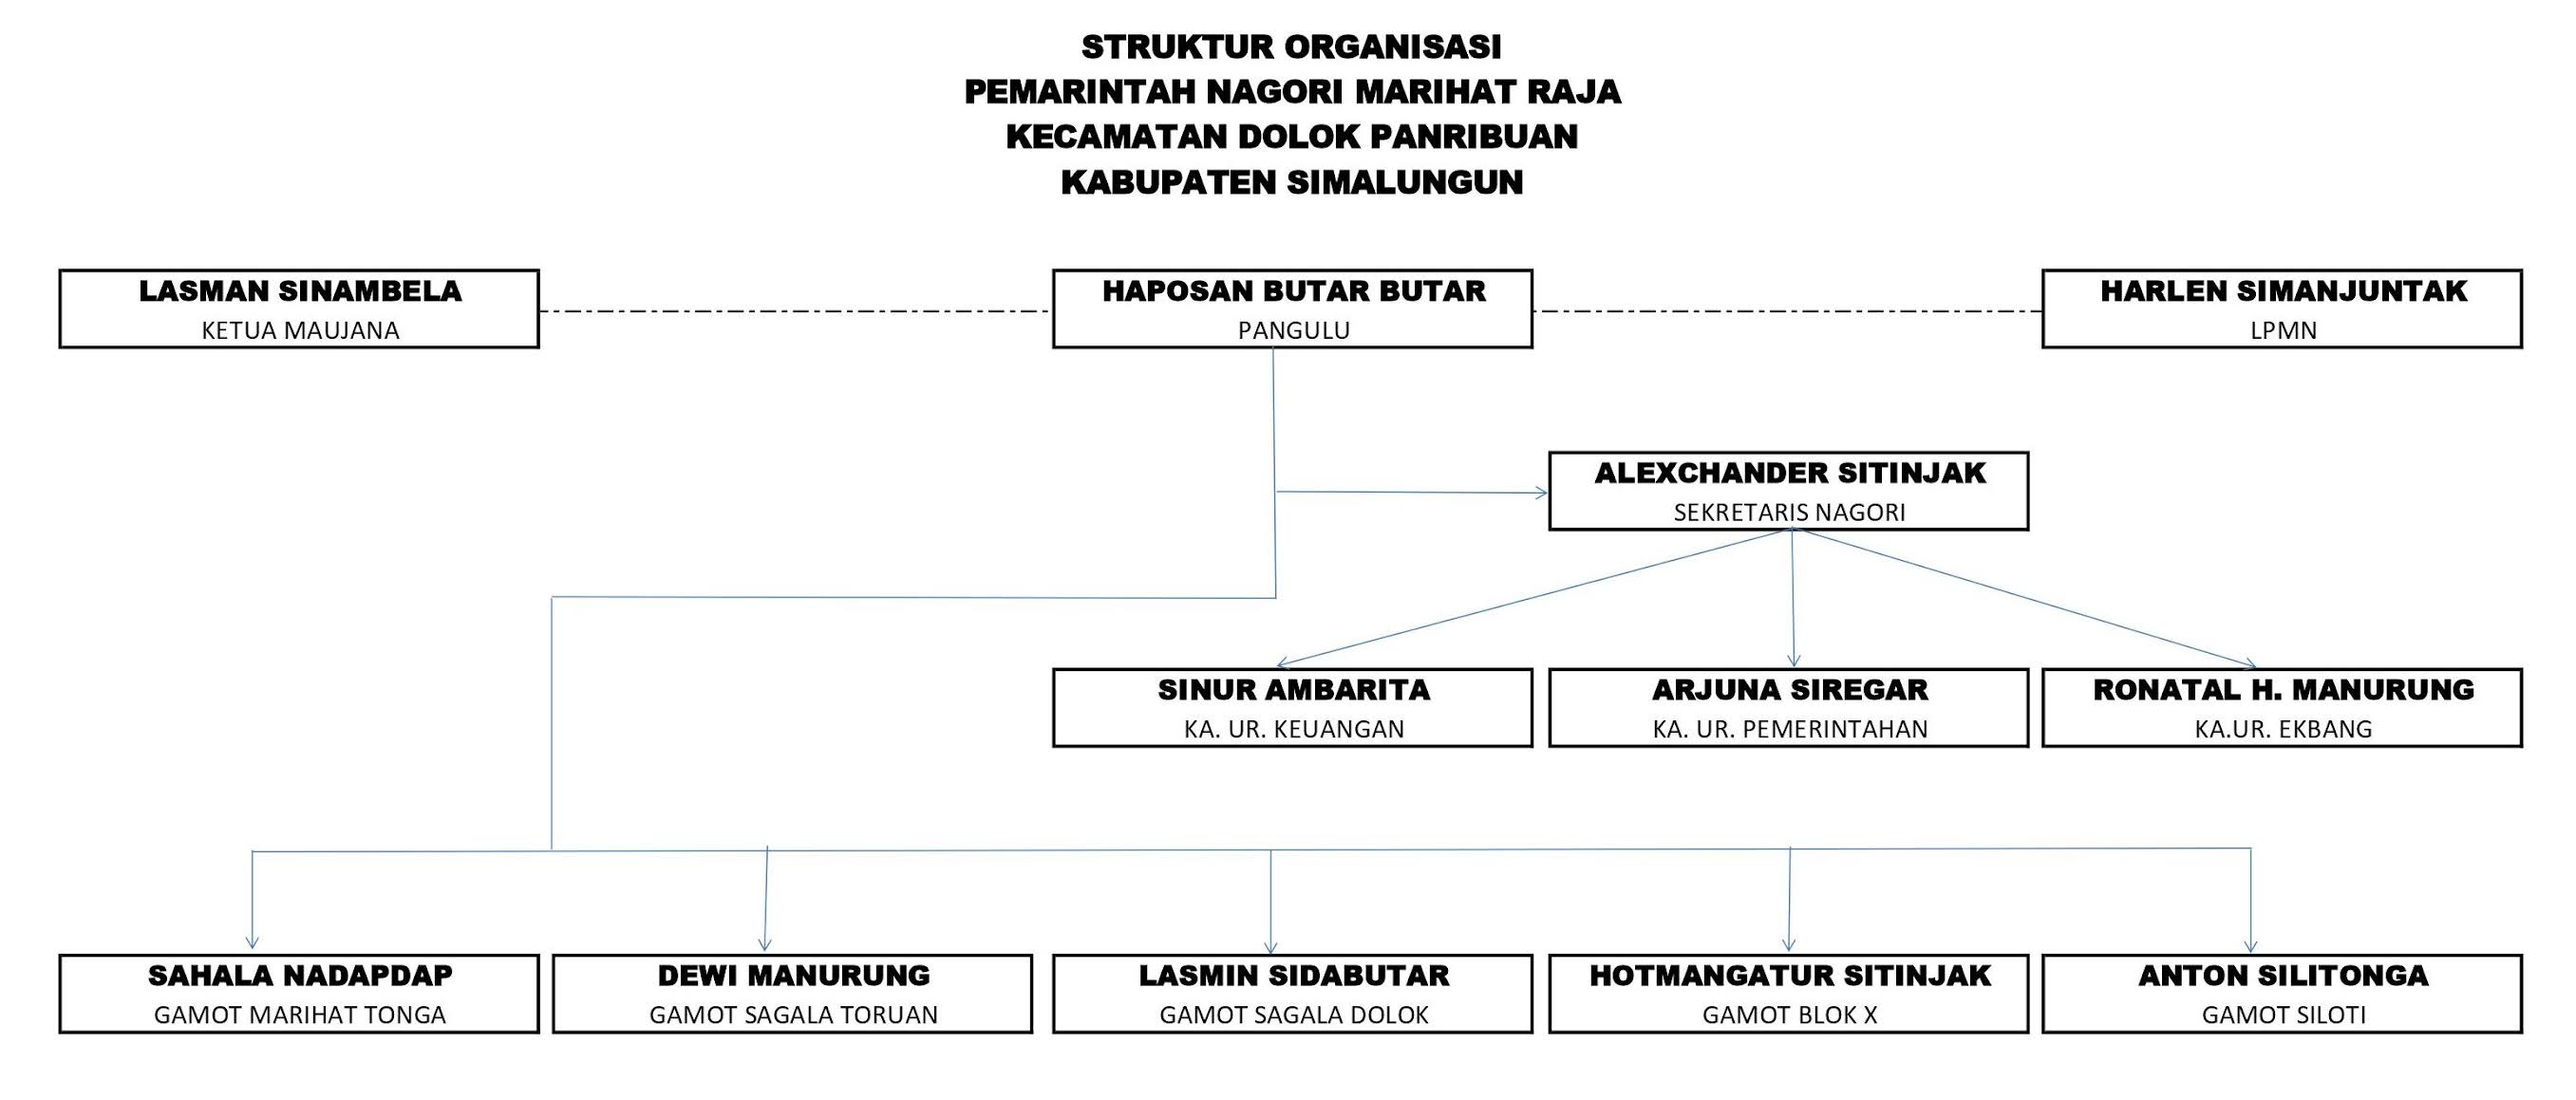 Struktur Organisasi Pemerintahan Nagori Marihat Raja - 2021